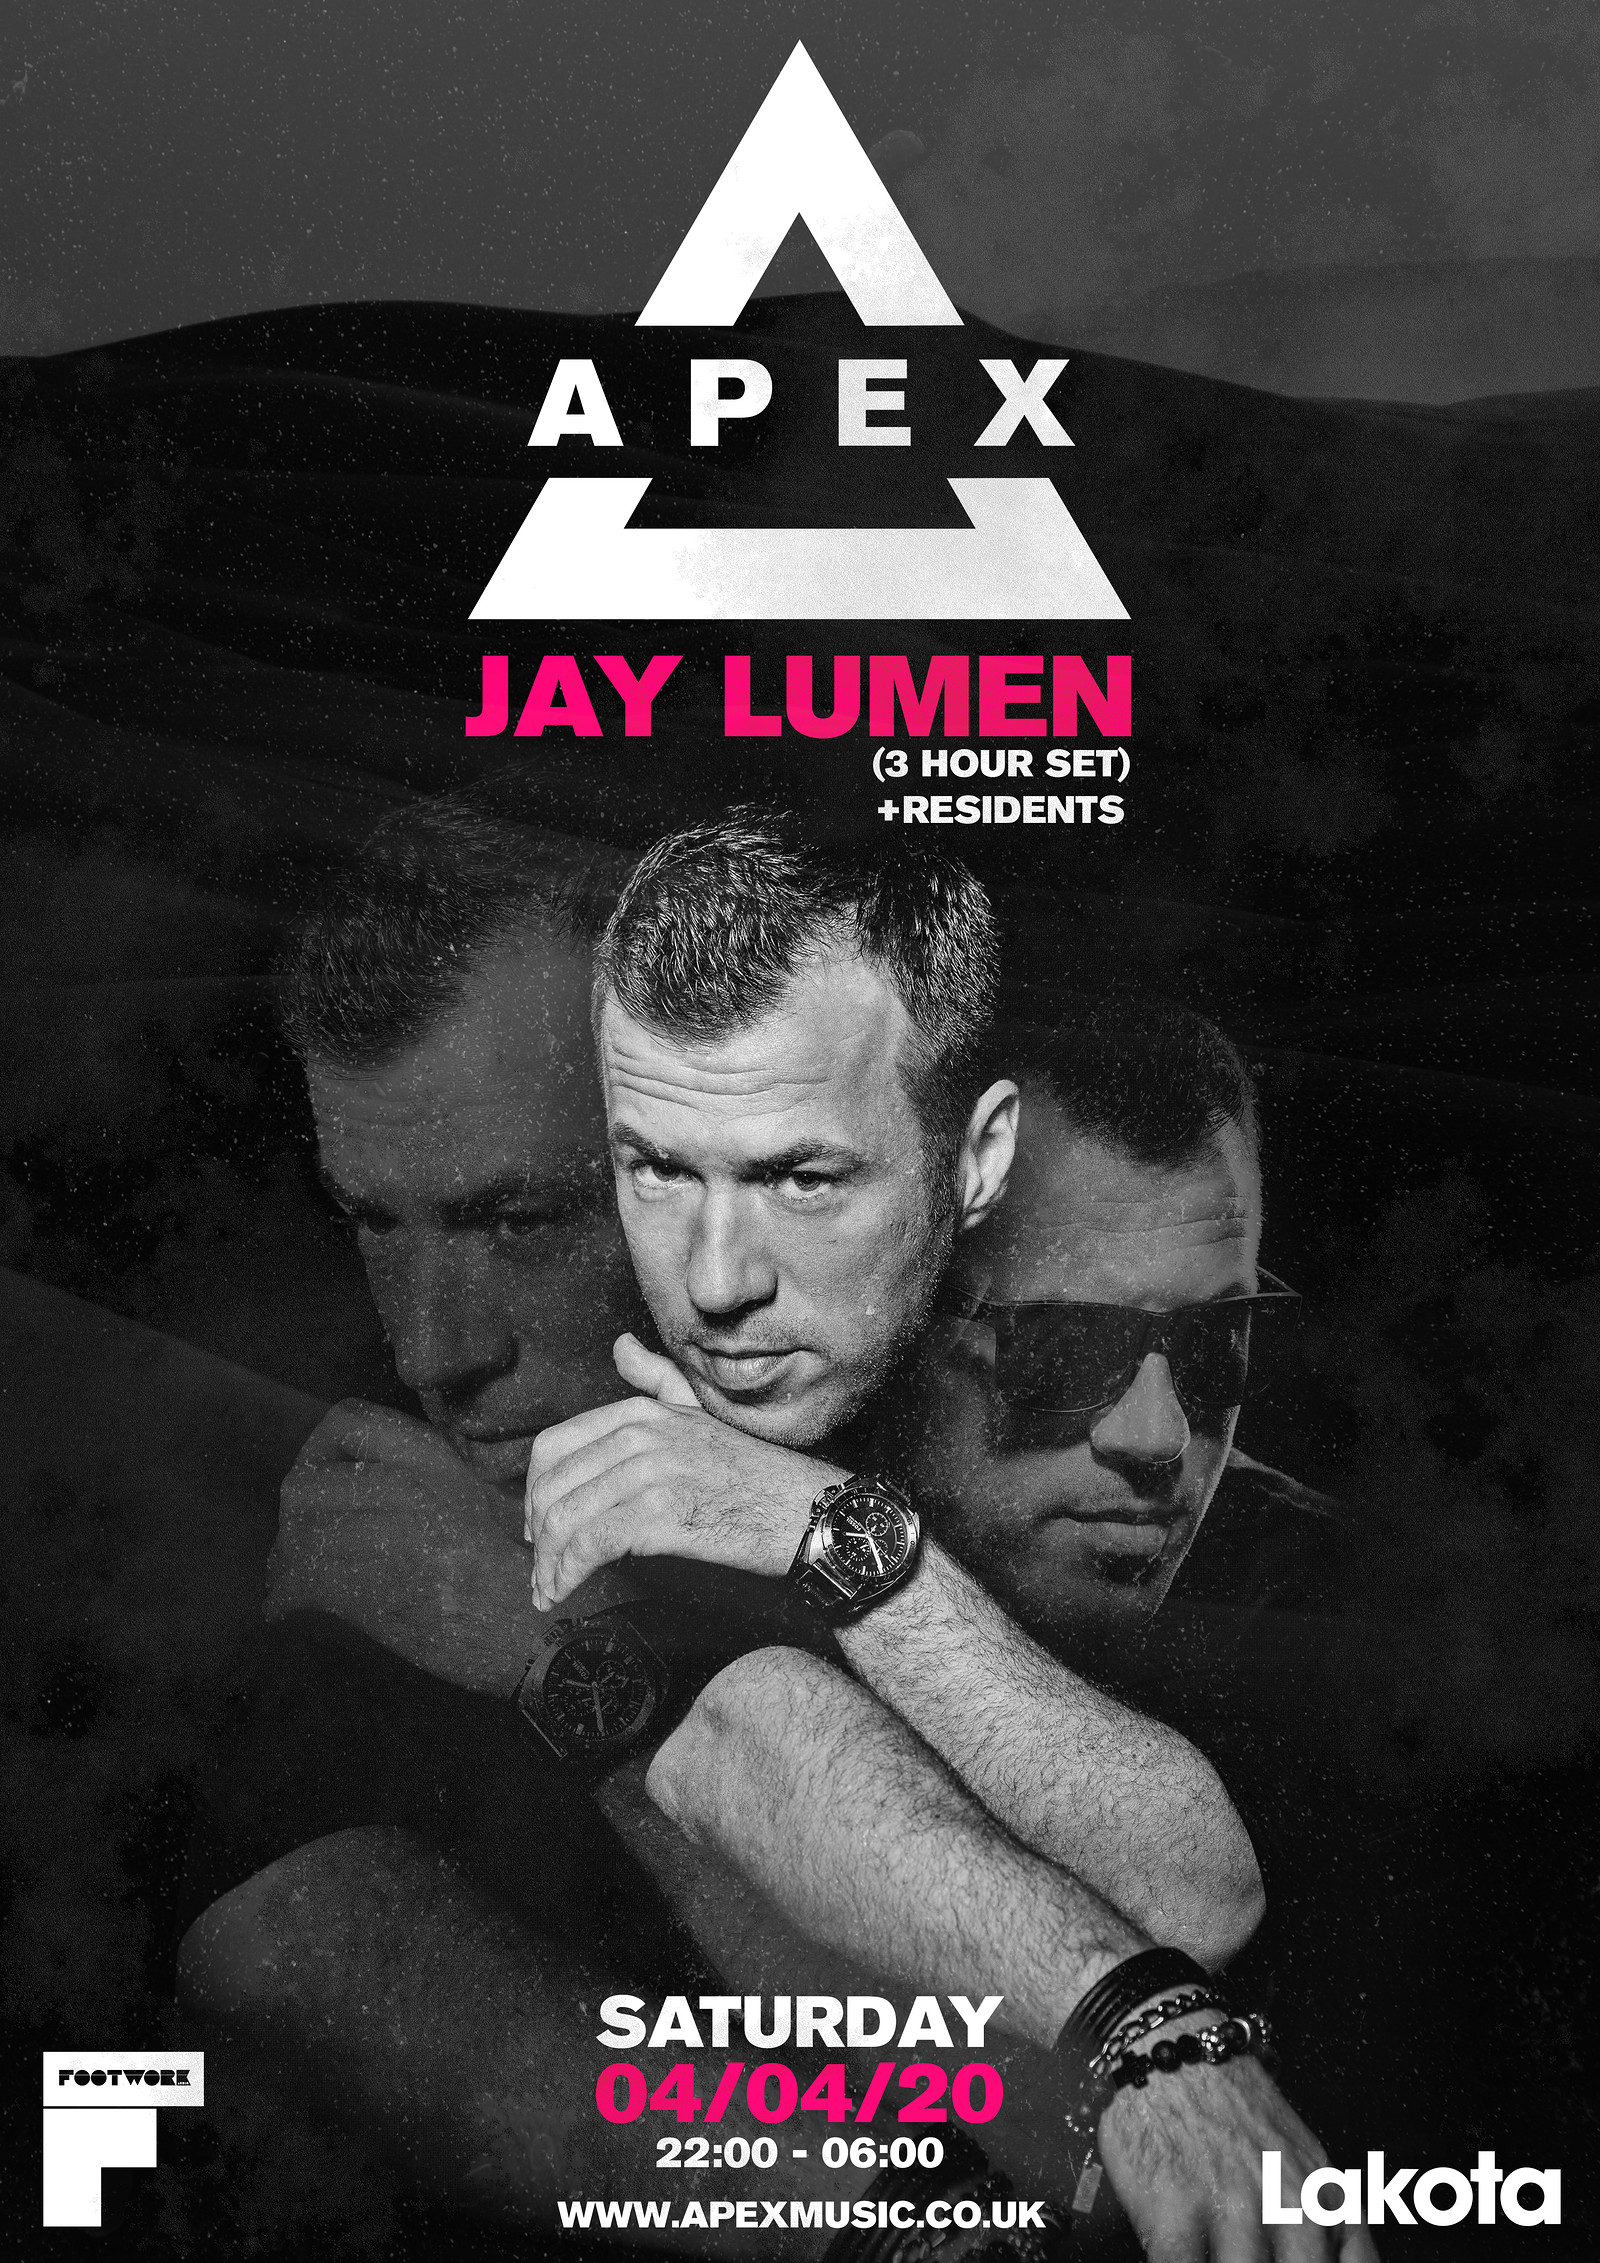 Apex presents Jay Lumen at Lakota